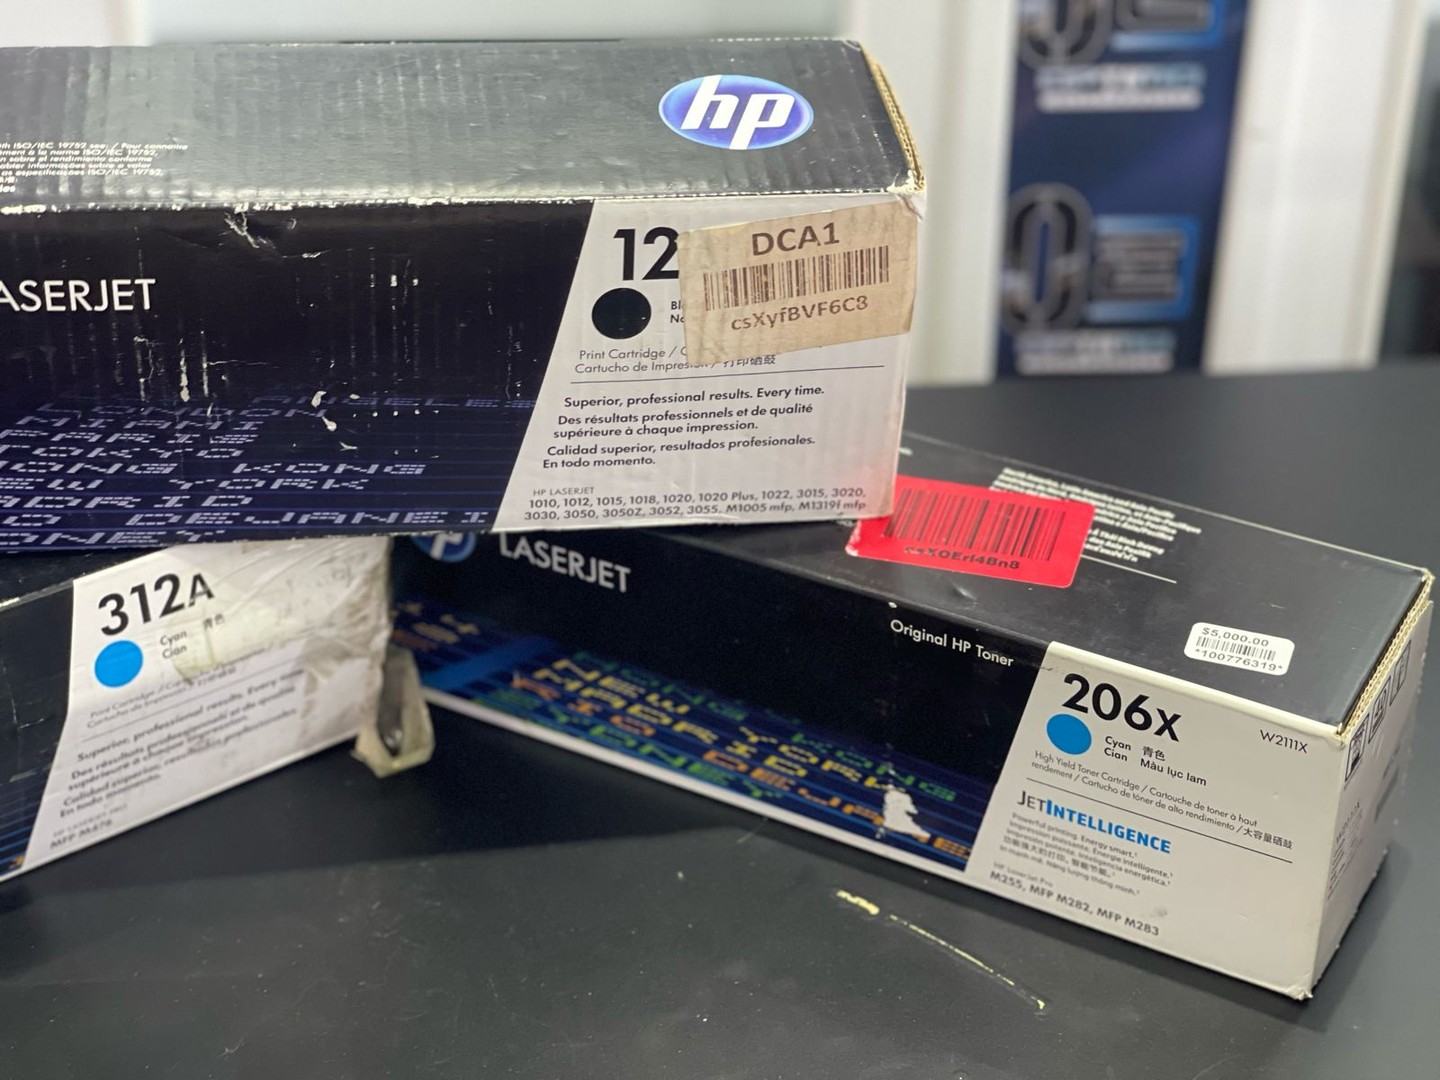 impresoras y scanners - Toner HP Laserjet 312A 206X Azul  3